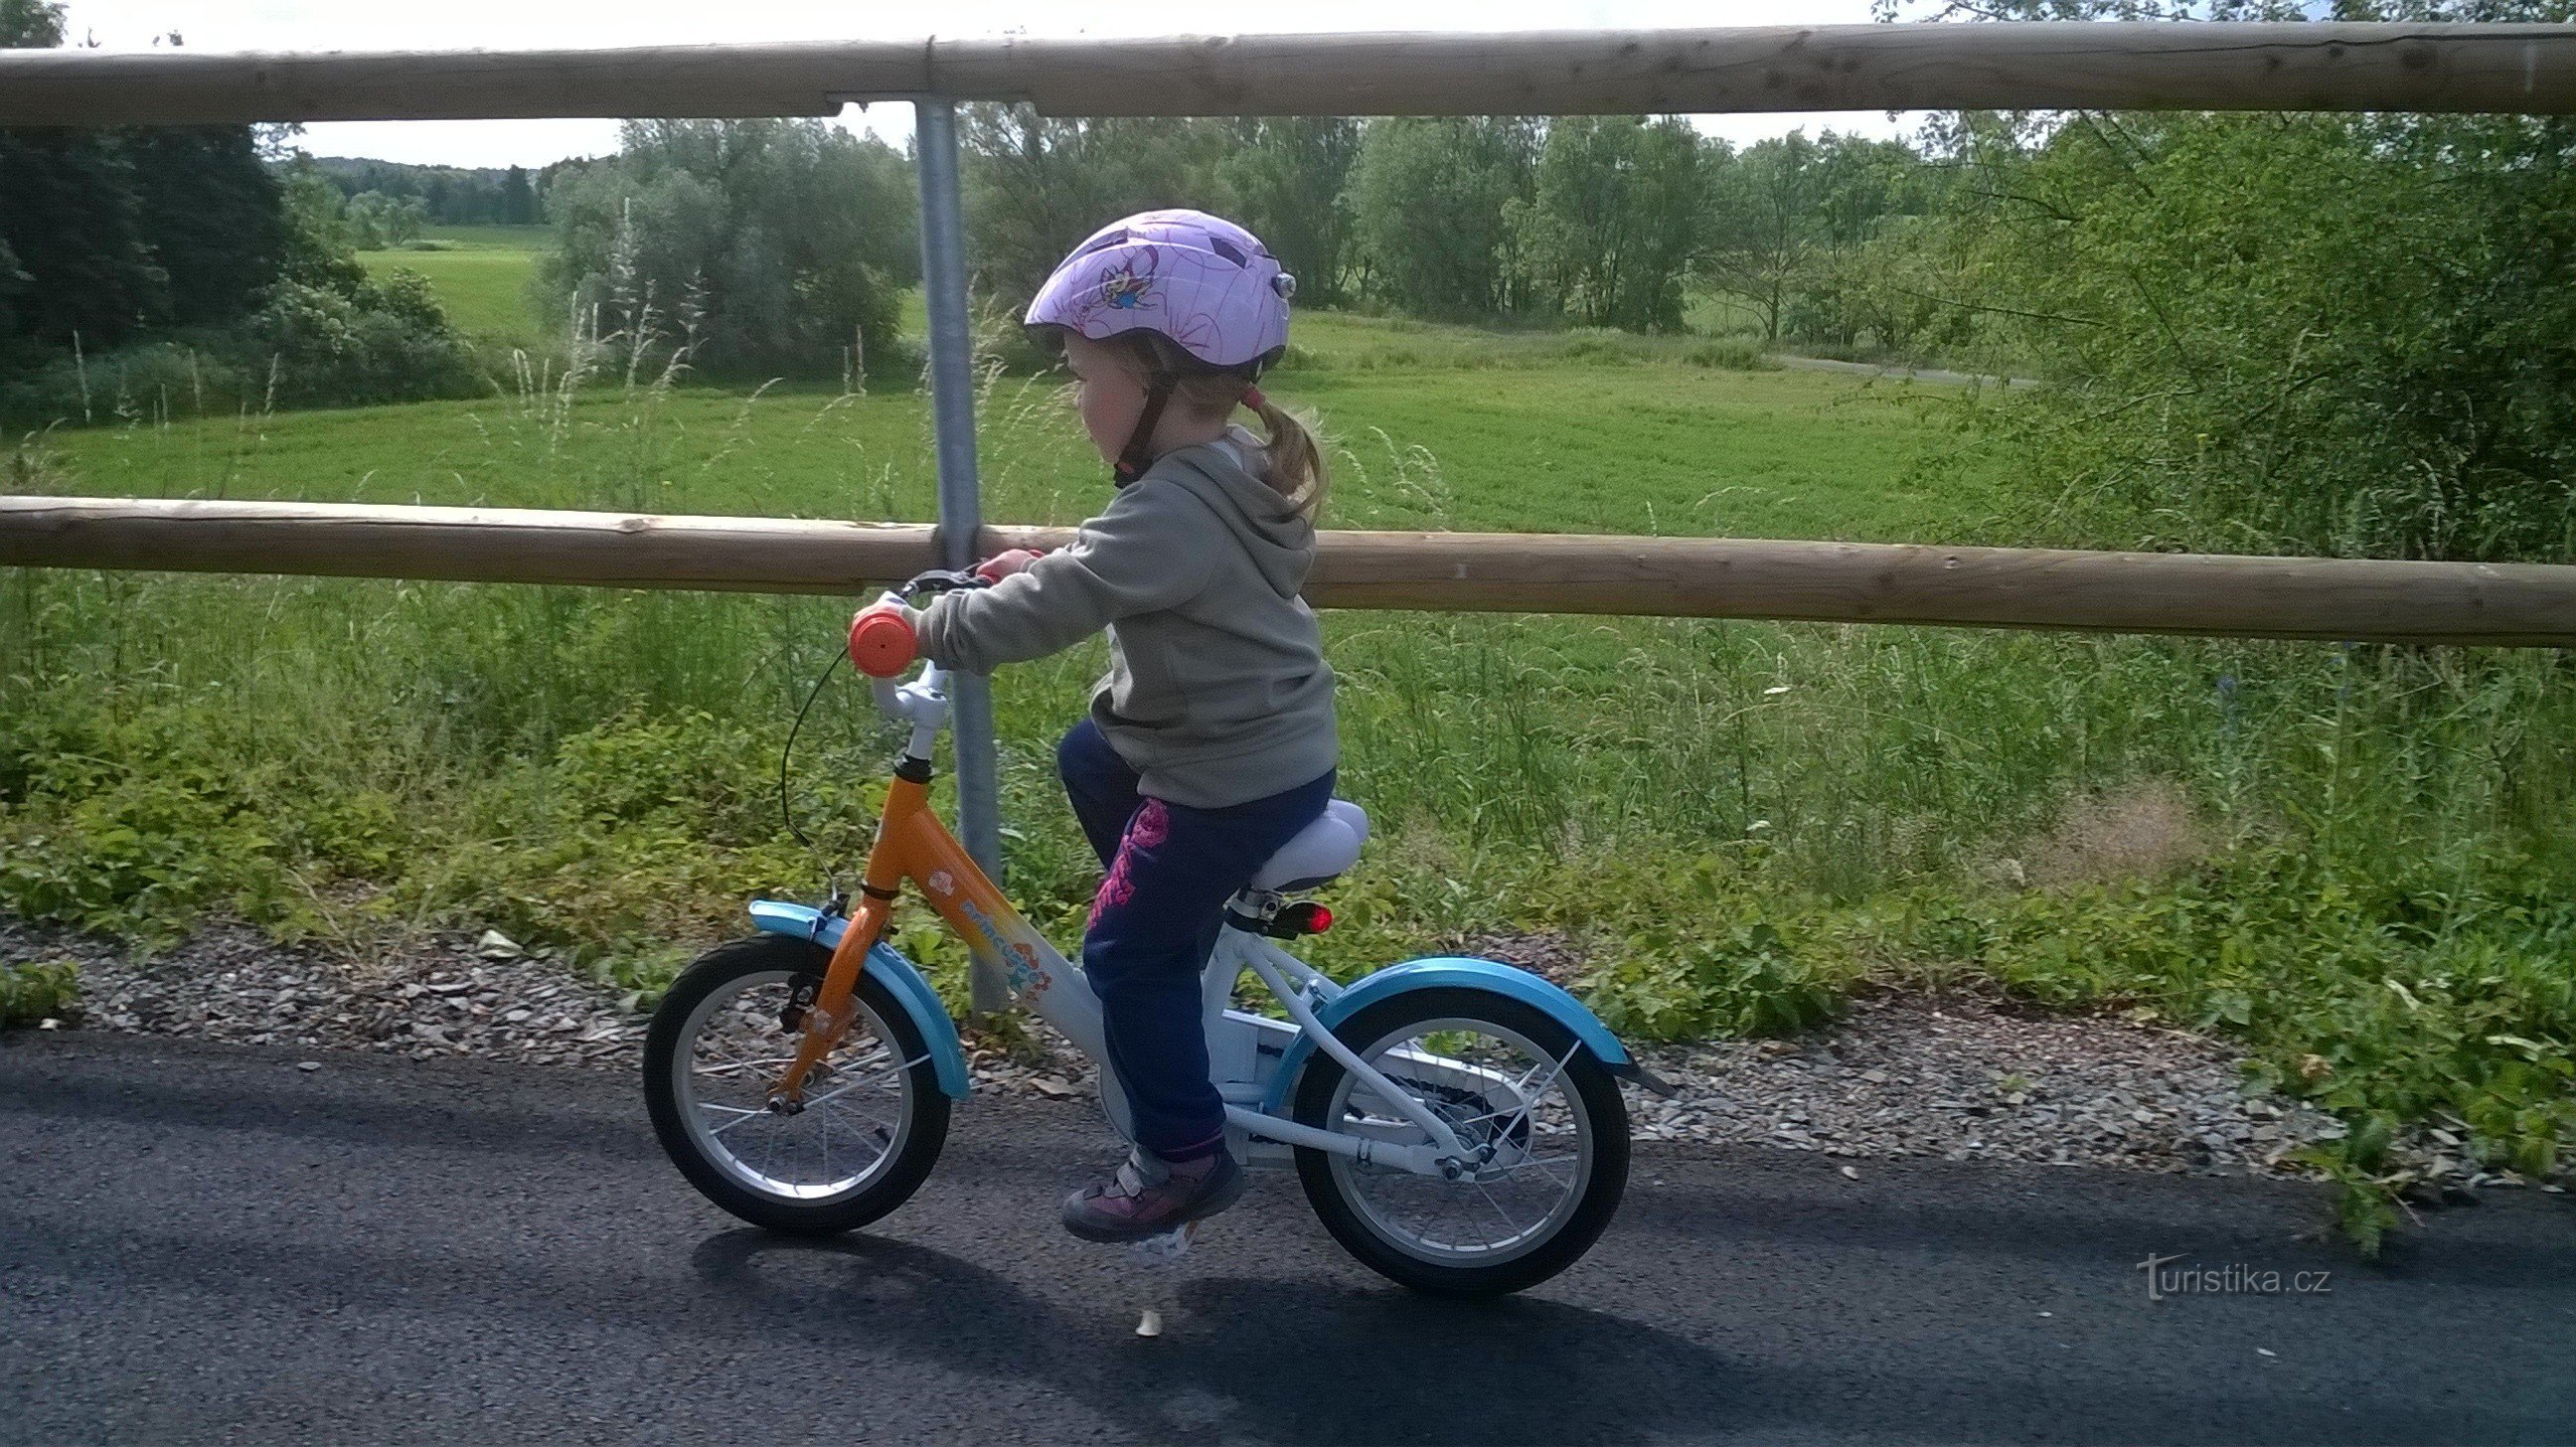 Dzieci na rowerach będą się dobrze bawić, trasa nie jest trudna do pokonania